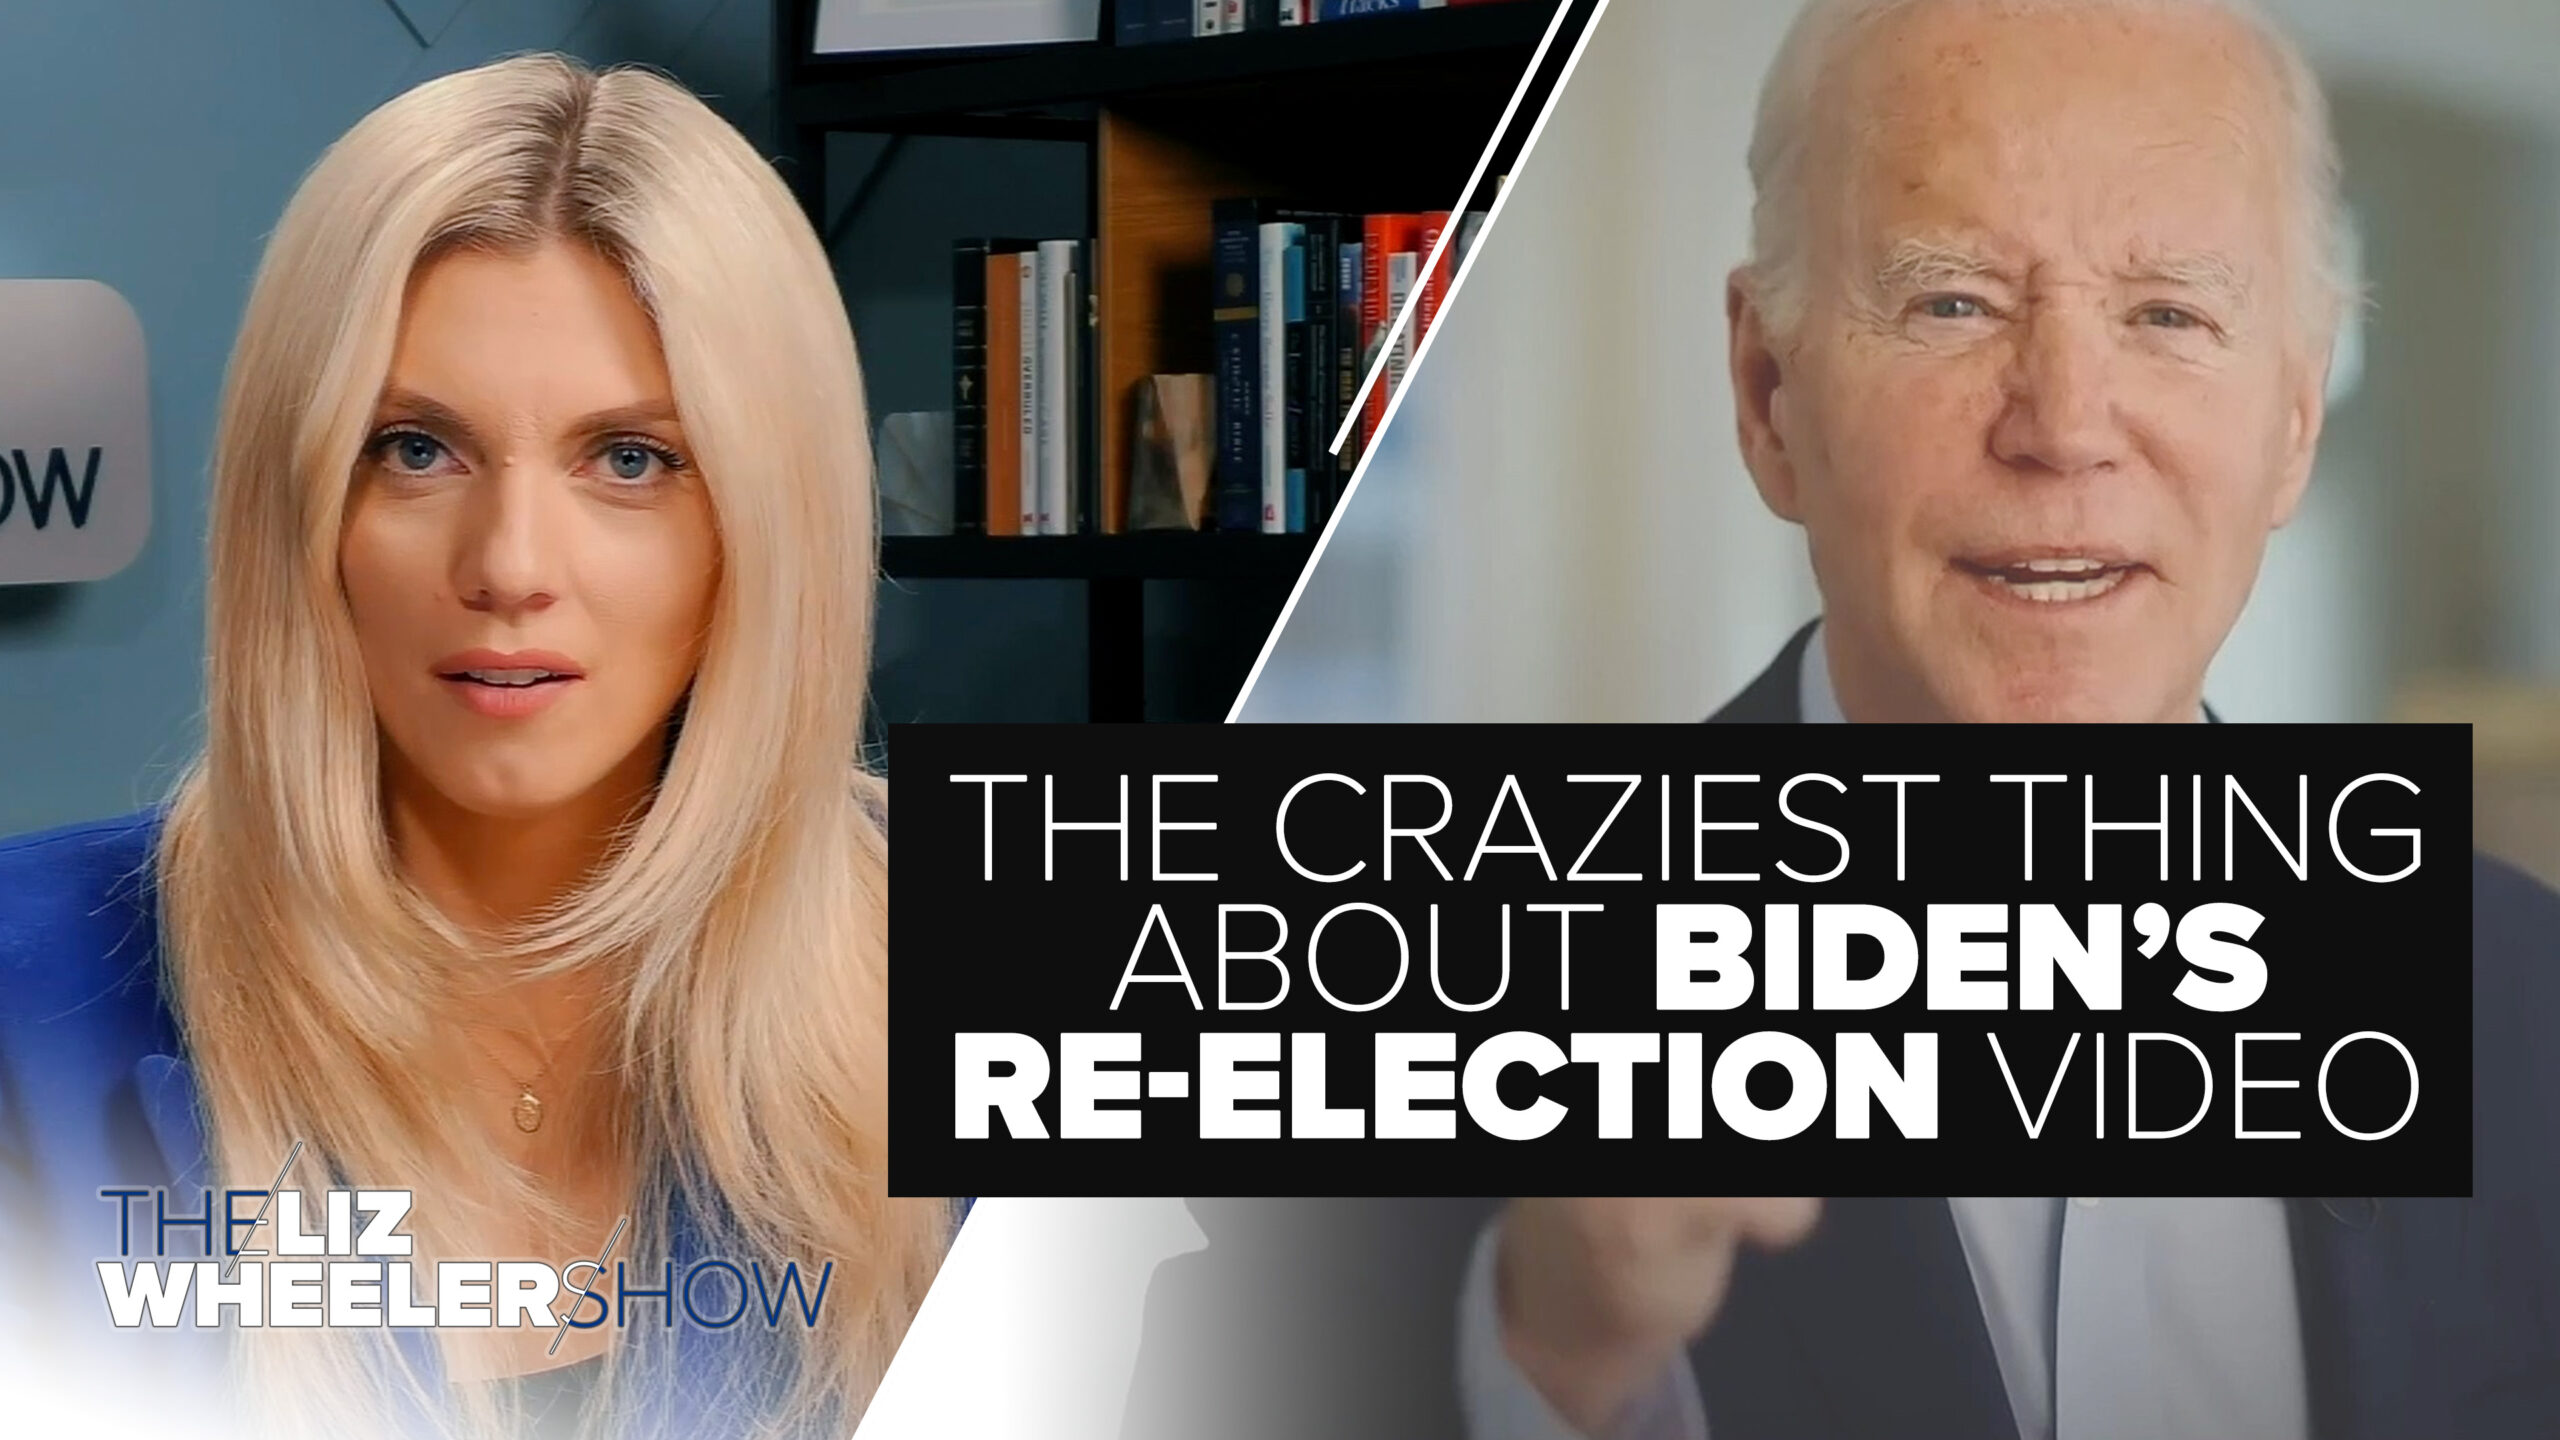 Joe Biden speaks in his presidential campaign video